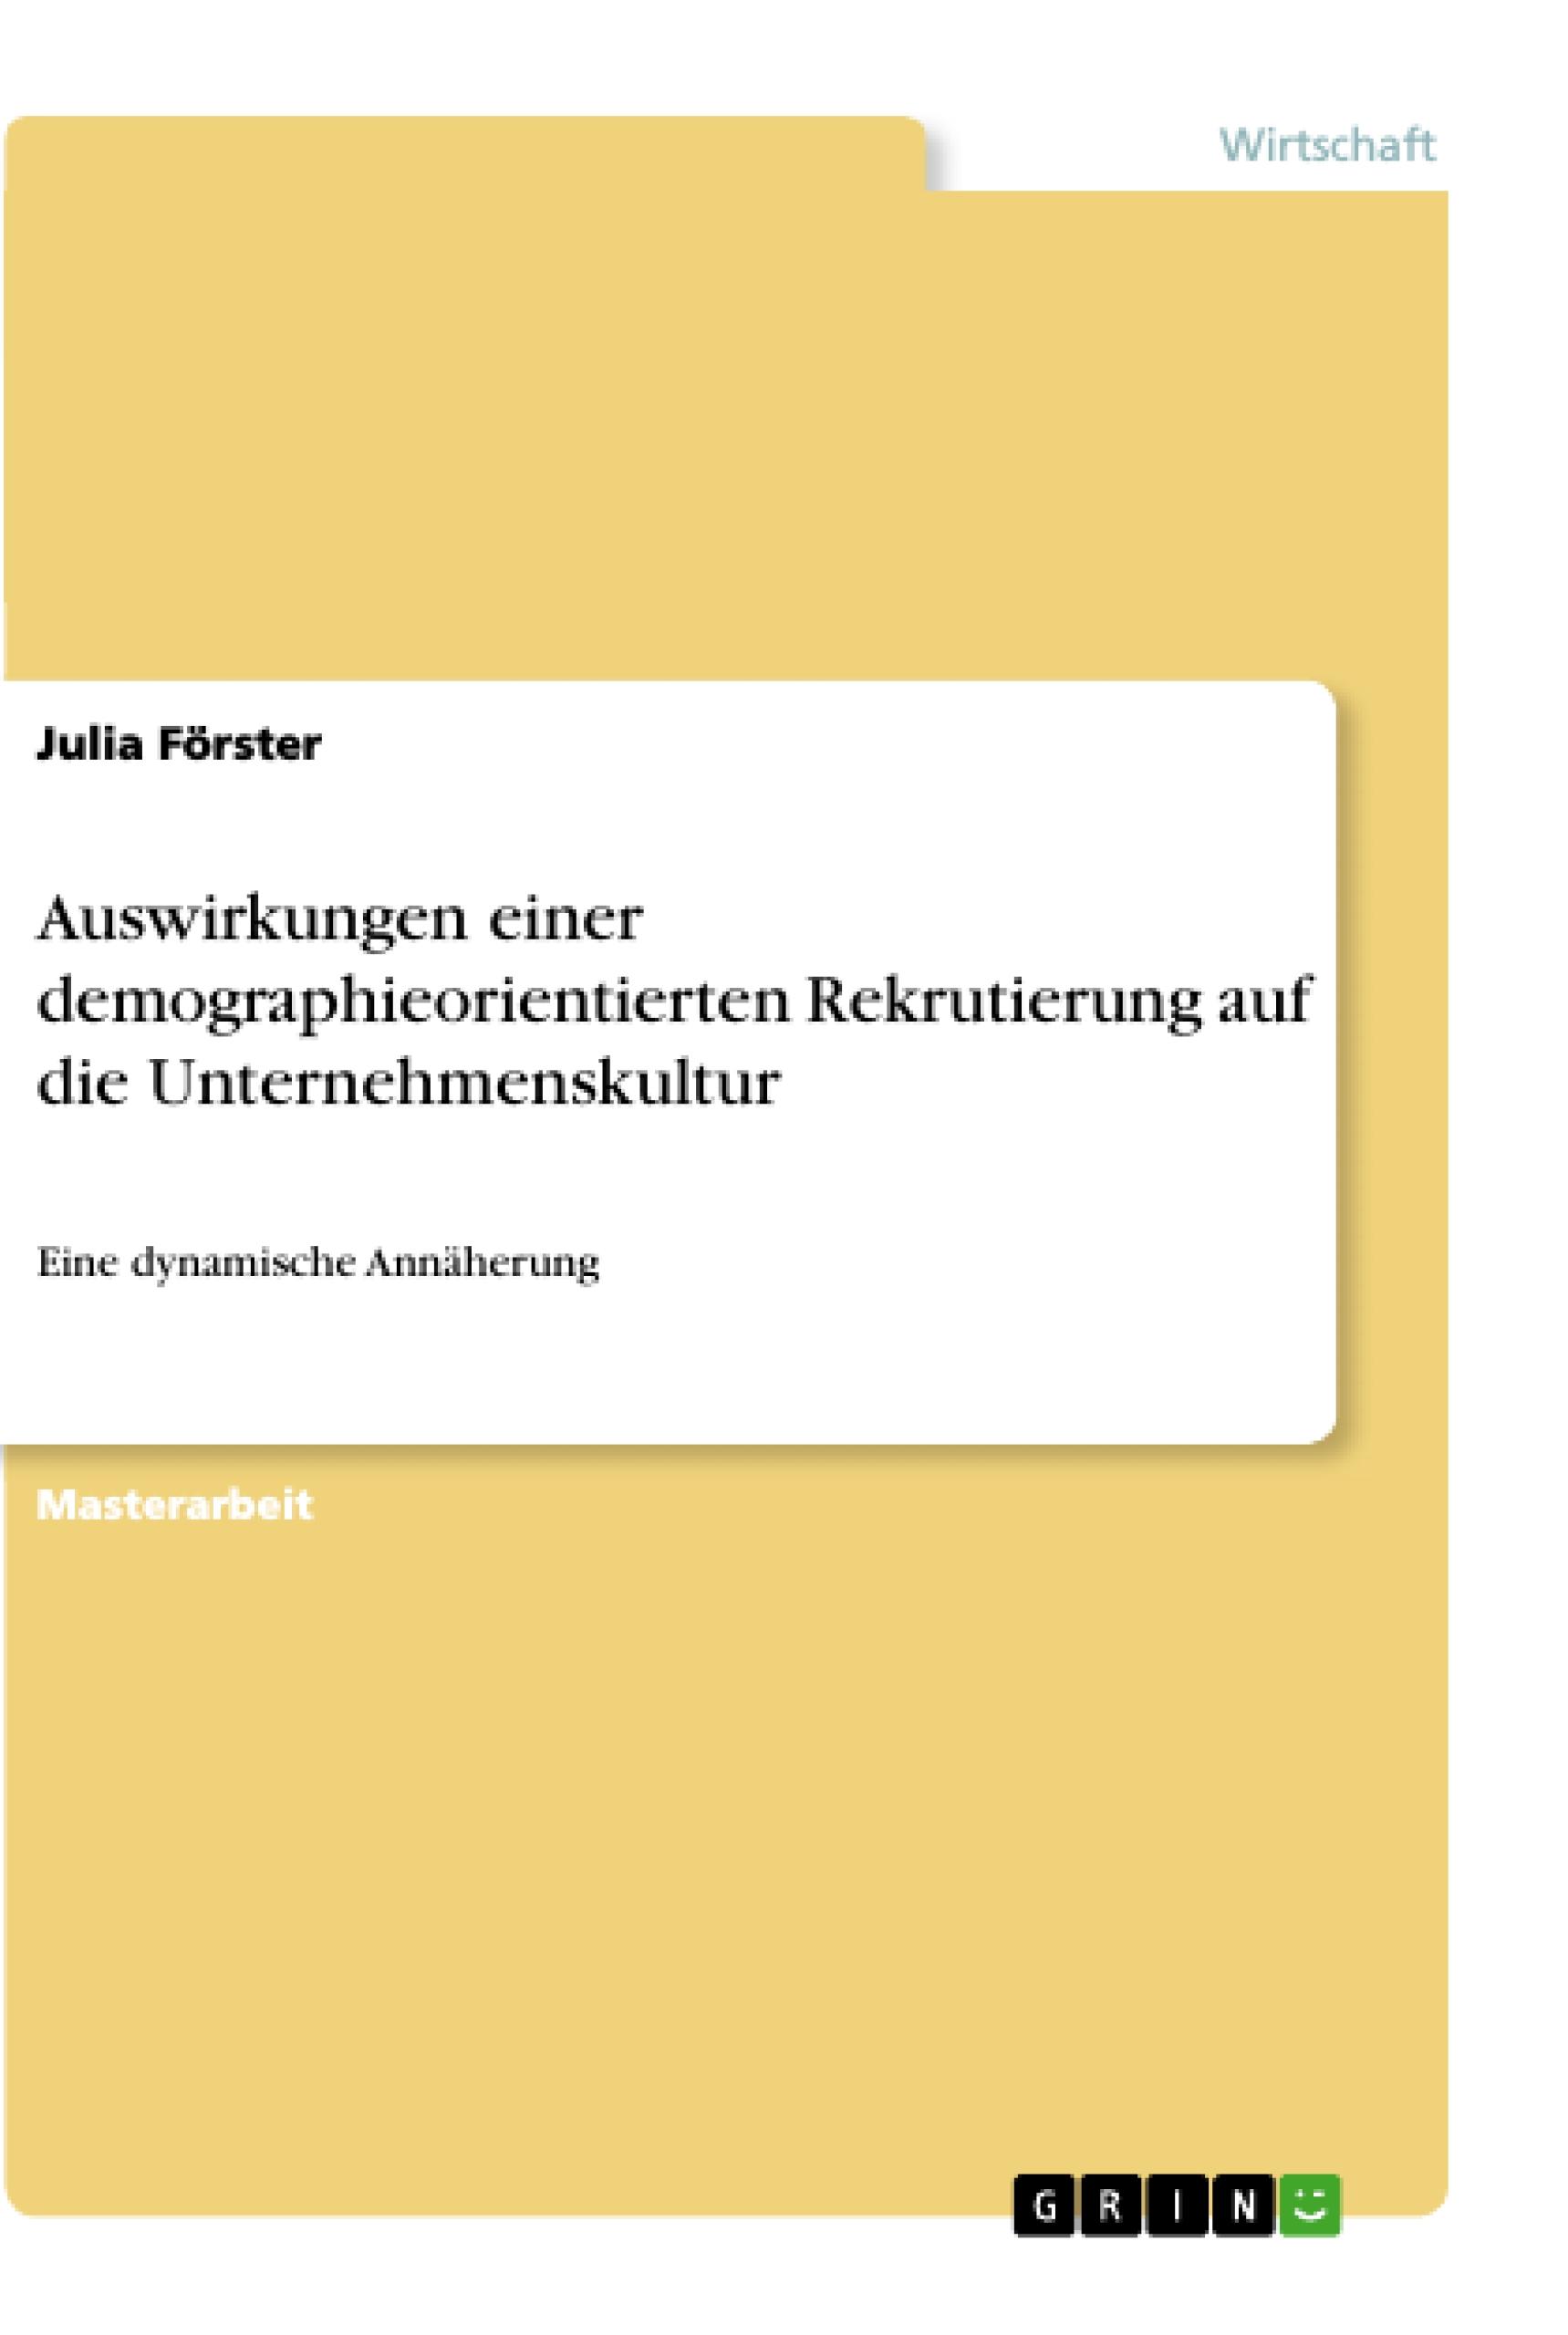 Auswirkungen einer demographieorientierten Rekrutierung auf die Unternehmenskultur - Foerster, Julia